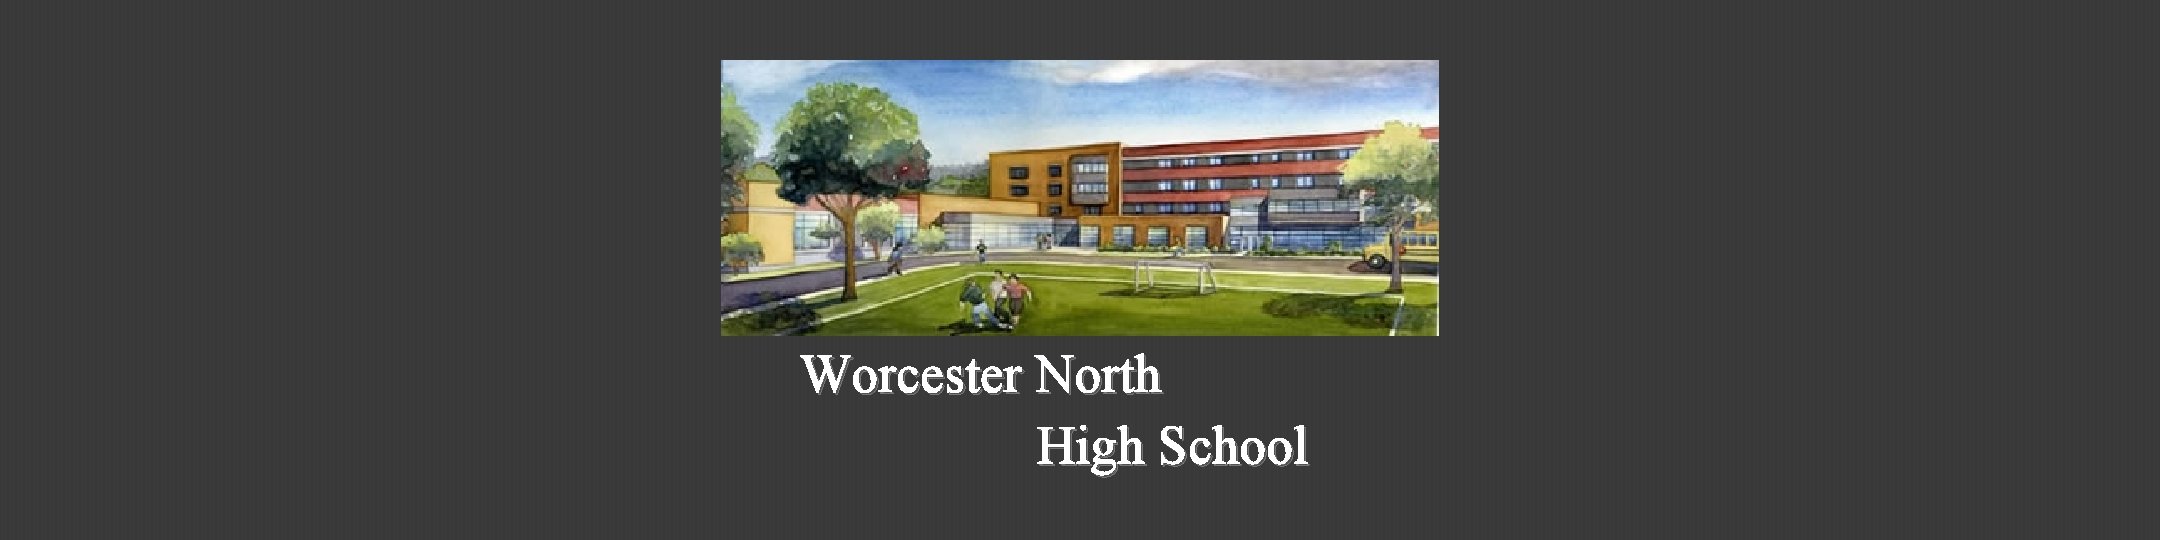 Worcester North High School 